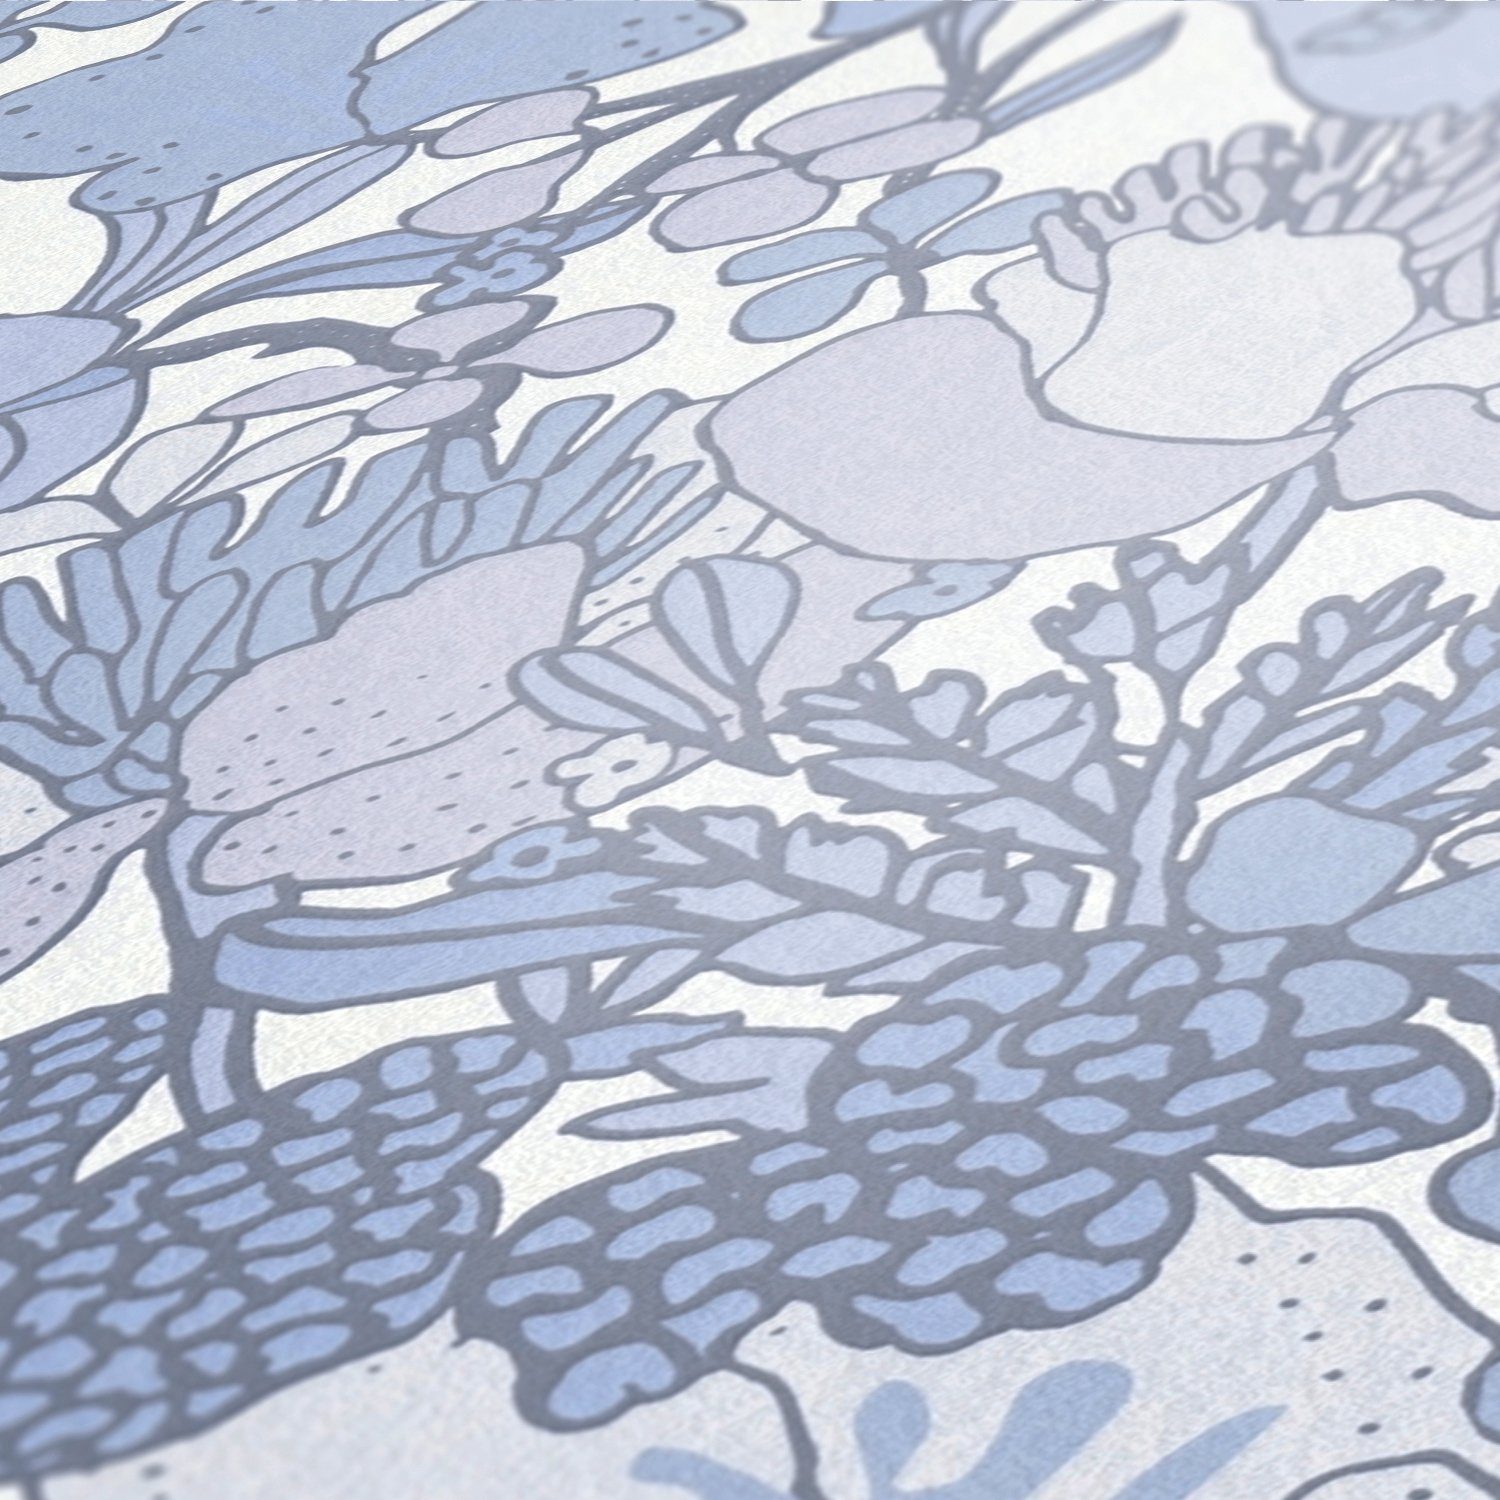 Blumentapete Dschungel Tapete Architects Paper Impression, botanisch, Vliestapete glatt, grau/blau/weiß floral, Floral